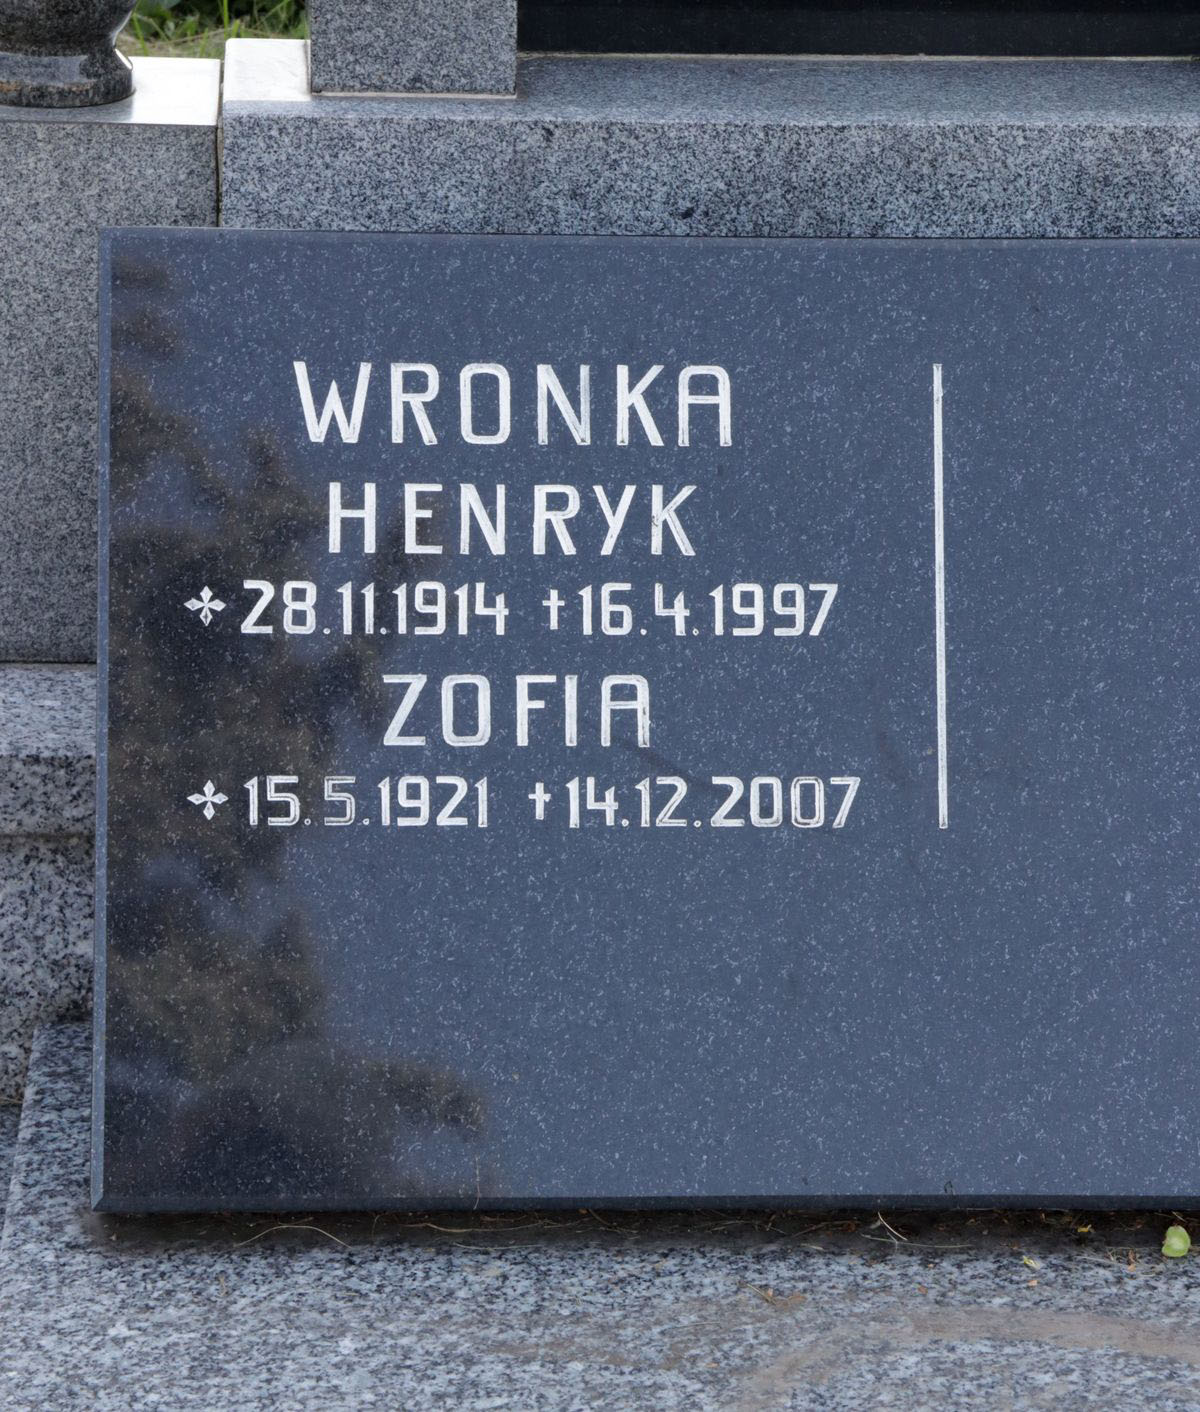 Inskrypcja z nagrobka rodziny Karch i rodziny Wronków, cmentarz w Sibicy